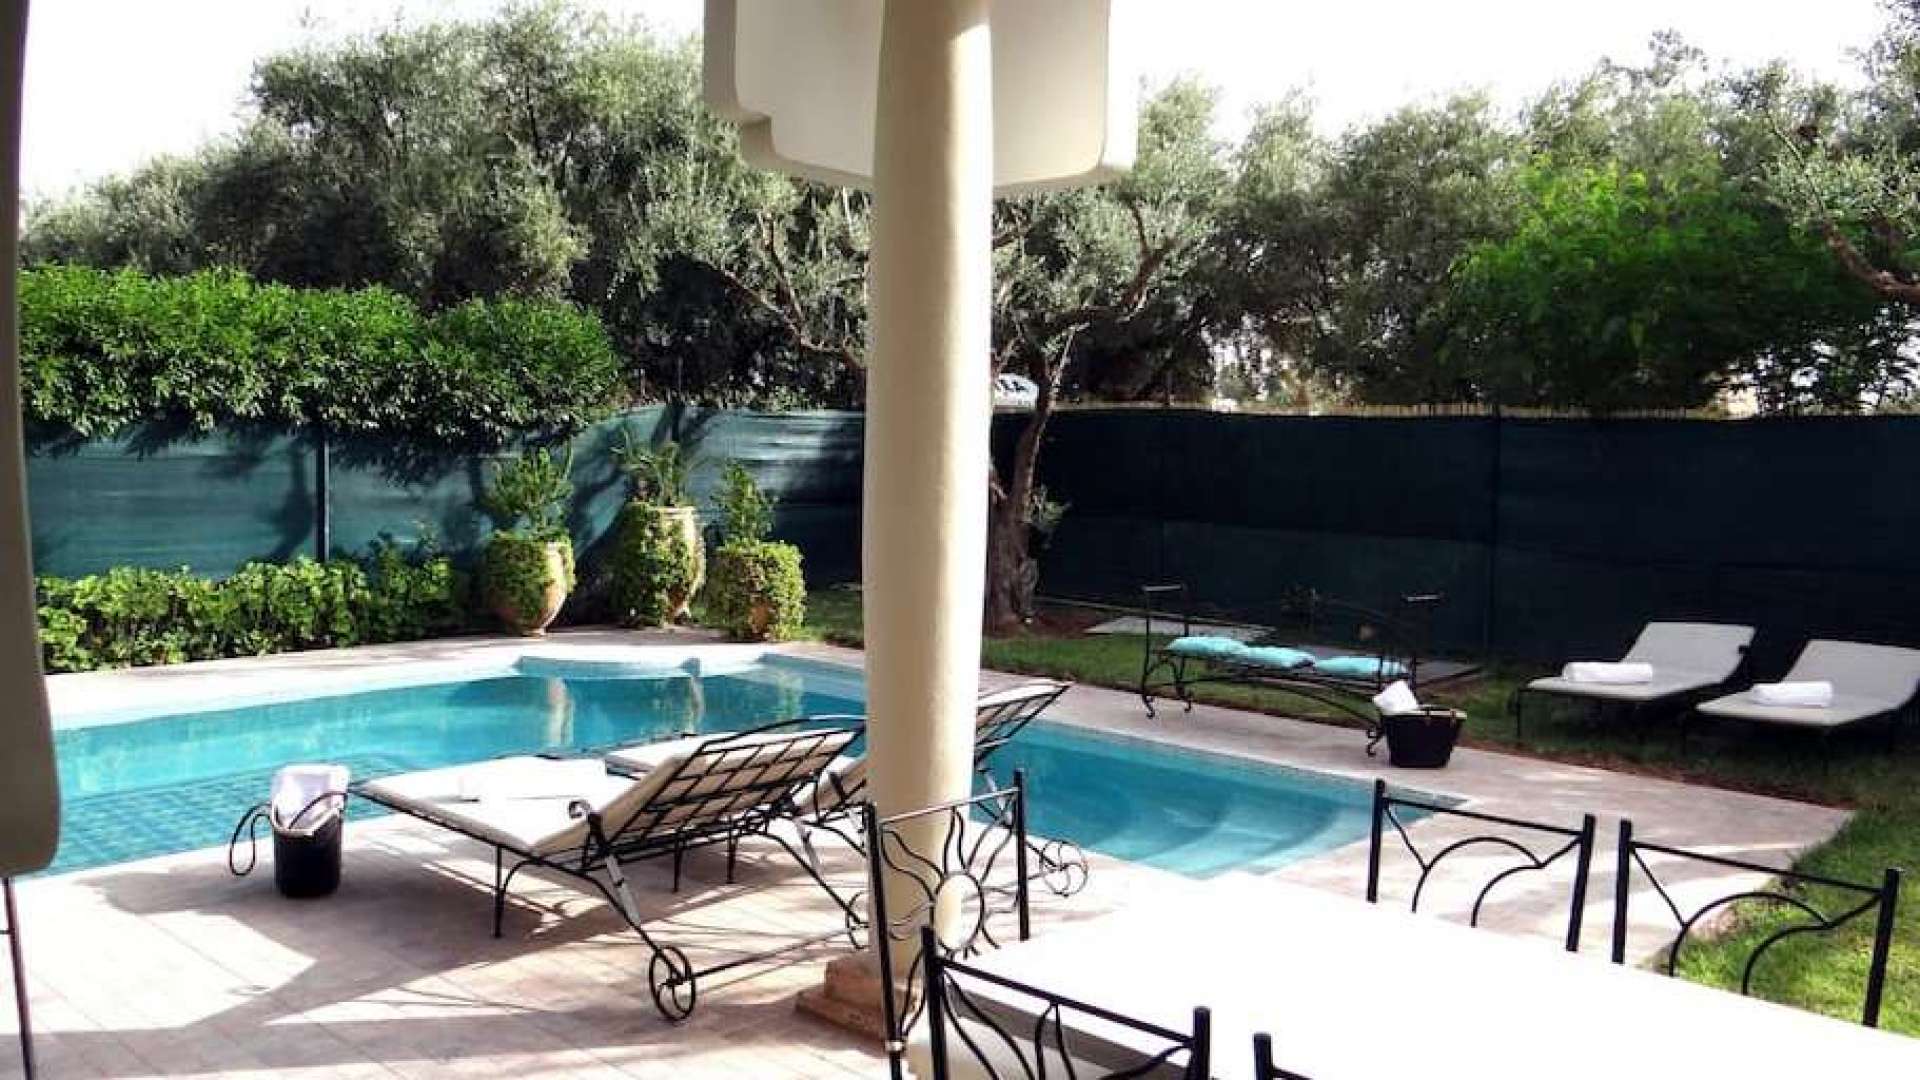 Location de vacances,Villa,Magnifique Villa 4ch avec Piscine Privée à proximité des 3 golfs de Marrakech,Marrakech,Route d'Ouarzazate